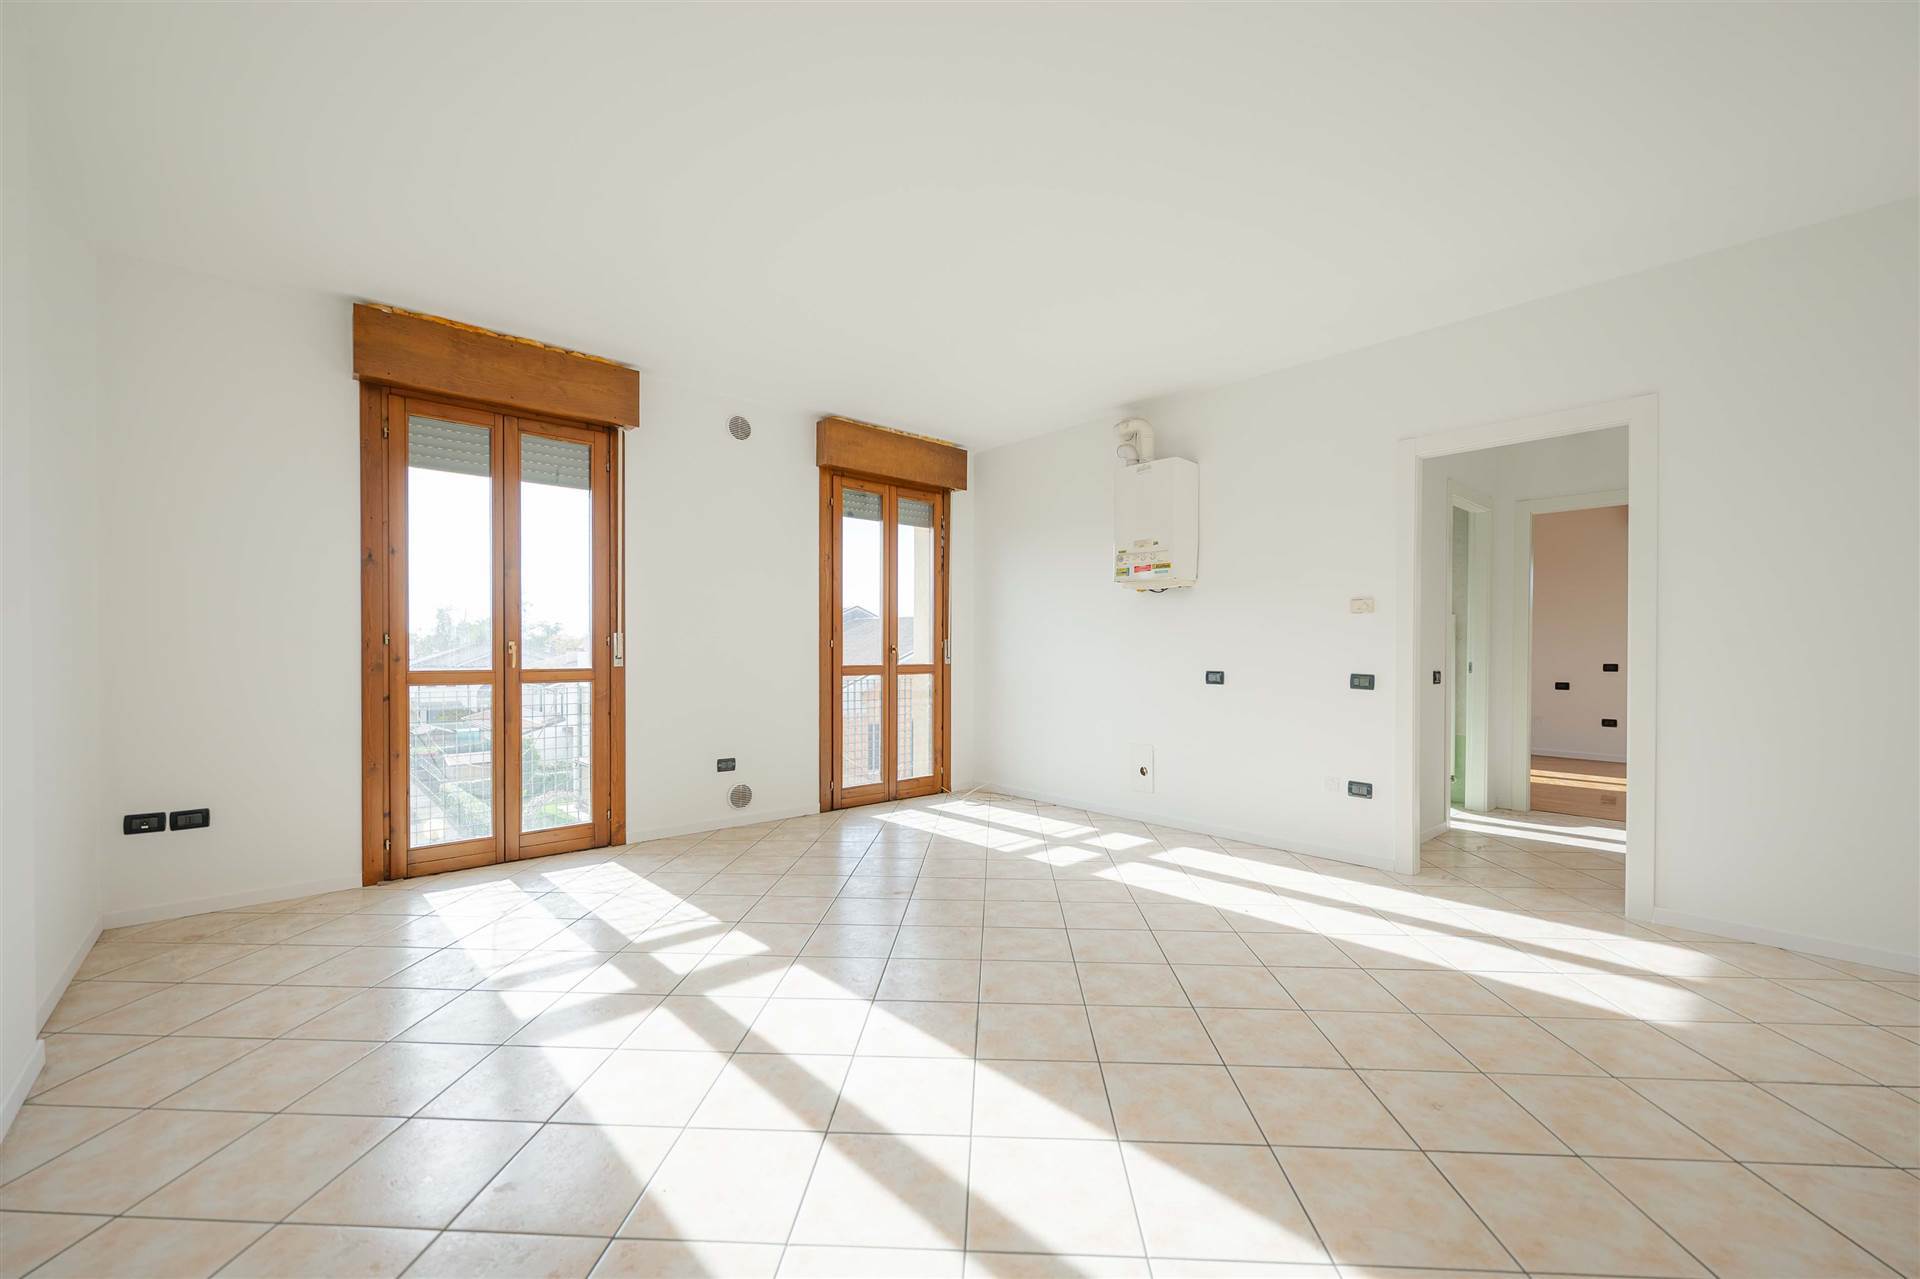 Appartamento in vendita a Piombino Dese, 4 locali, prezzo € 107.000 | PortaleAgenzieImmobiliari.it